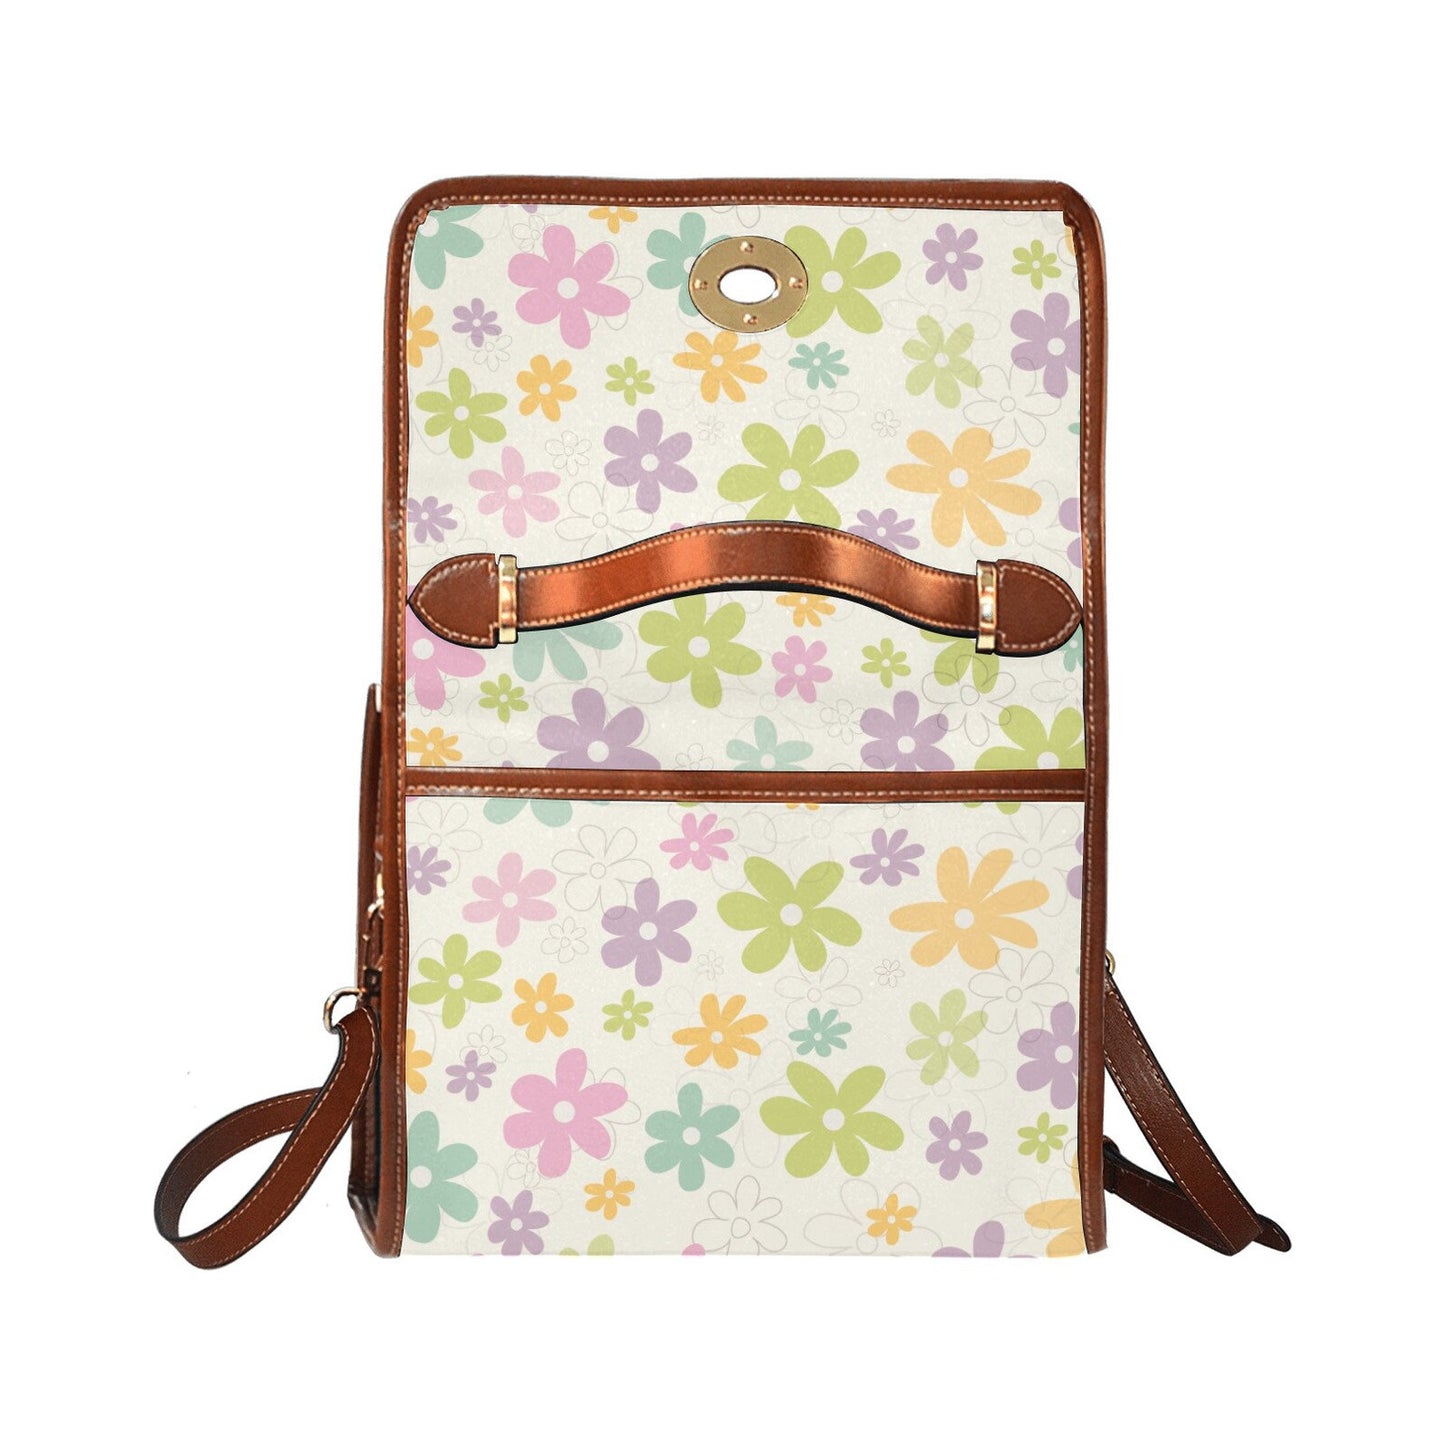 Retro Floral Handbag, Retro Handbag, Pastel floral bag, Floral Purse, 60s style handbag, Vintage handbag style, Retro Satchel Handbag